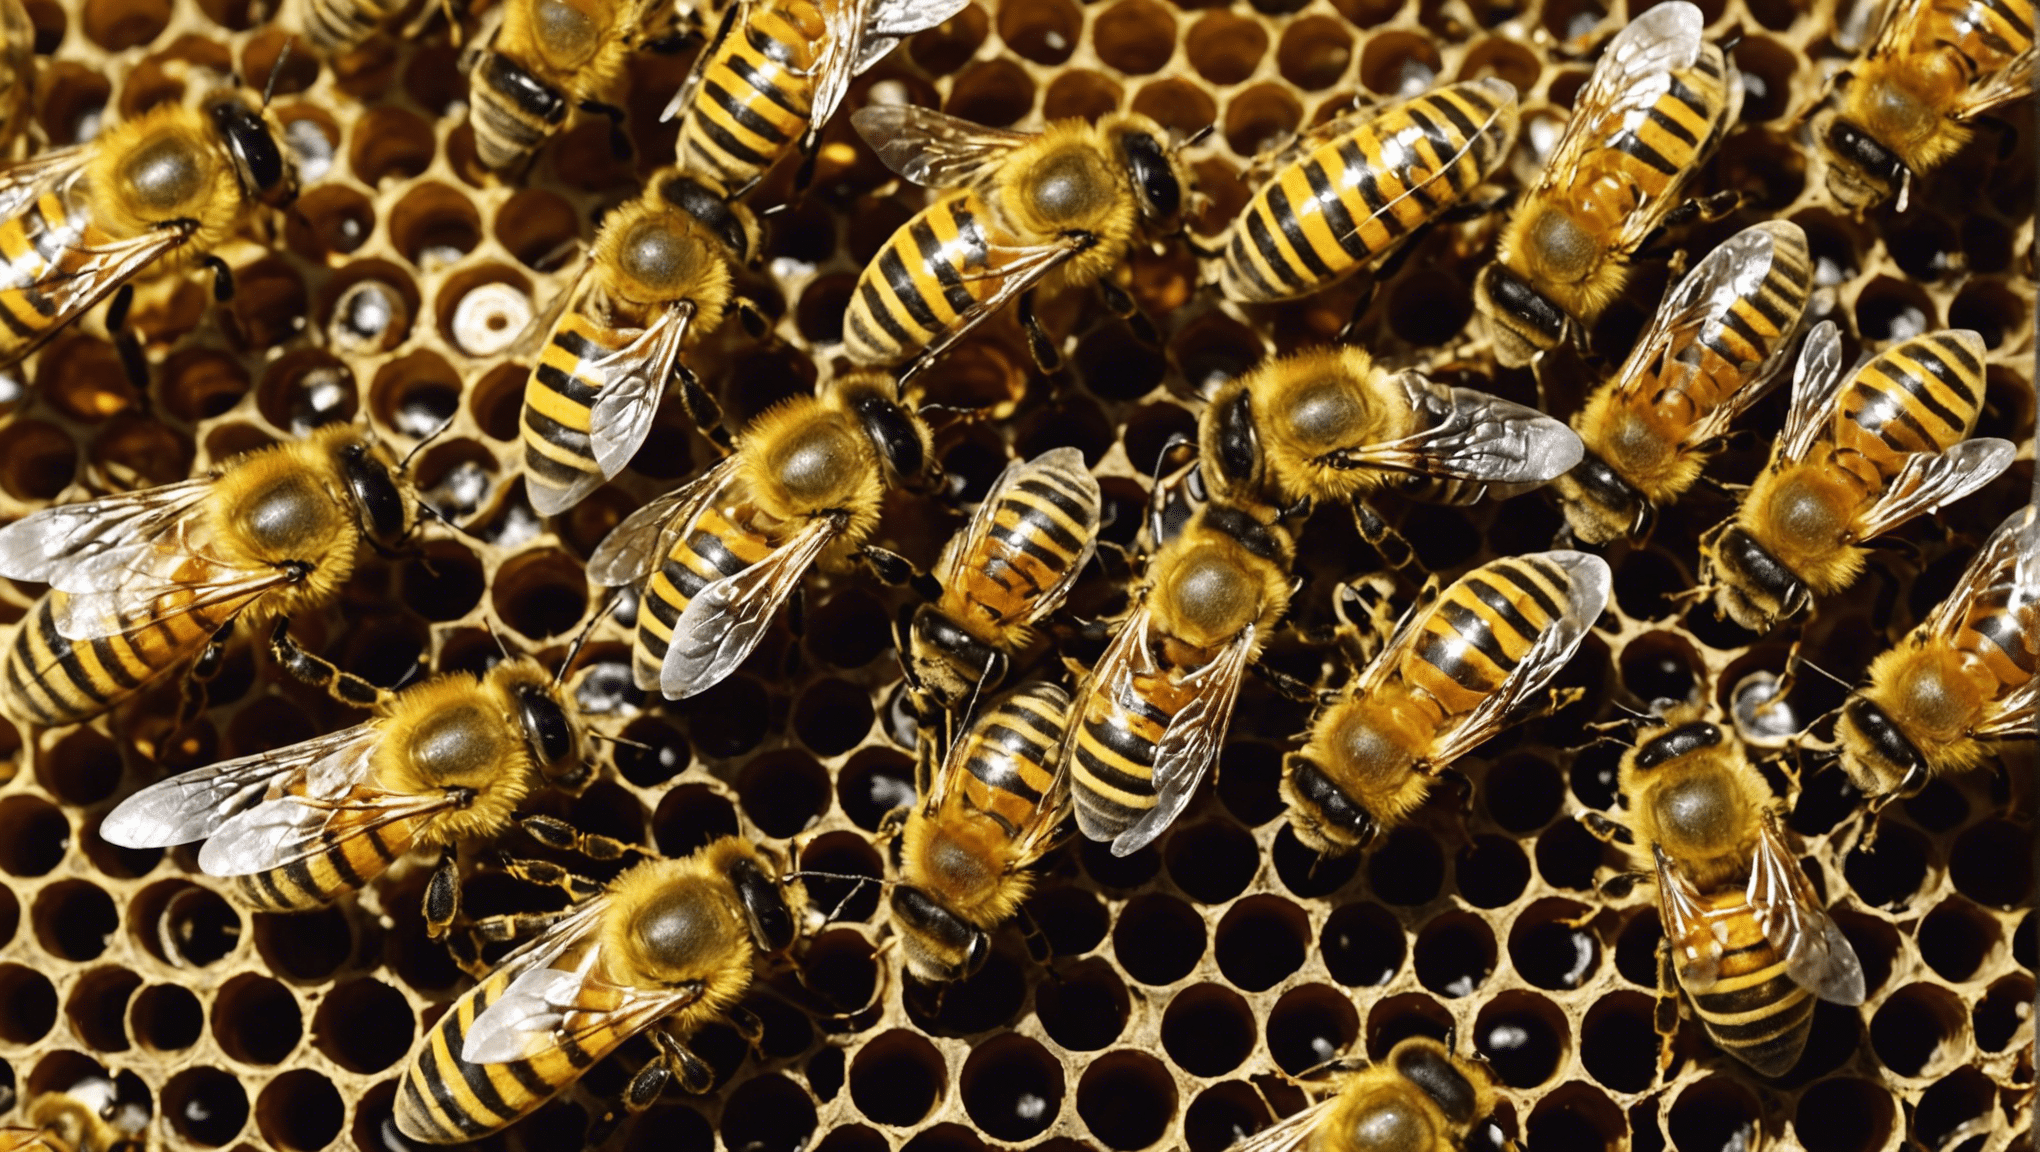 W tym urzekającym artykule dowiesz się, dlaczego życie pszczół jest tak wspaniałe i niezbędne dla naszego ekosystemu.